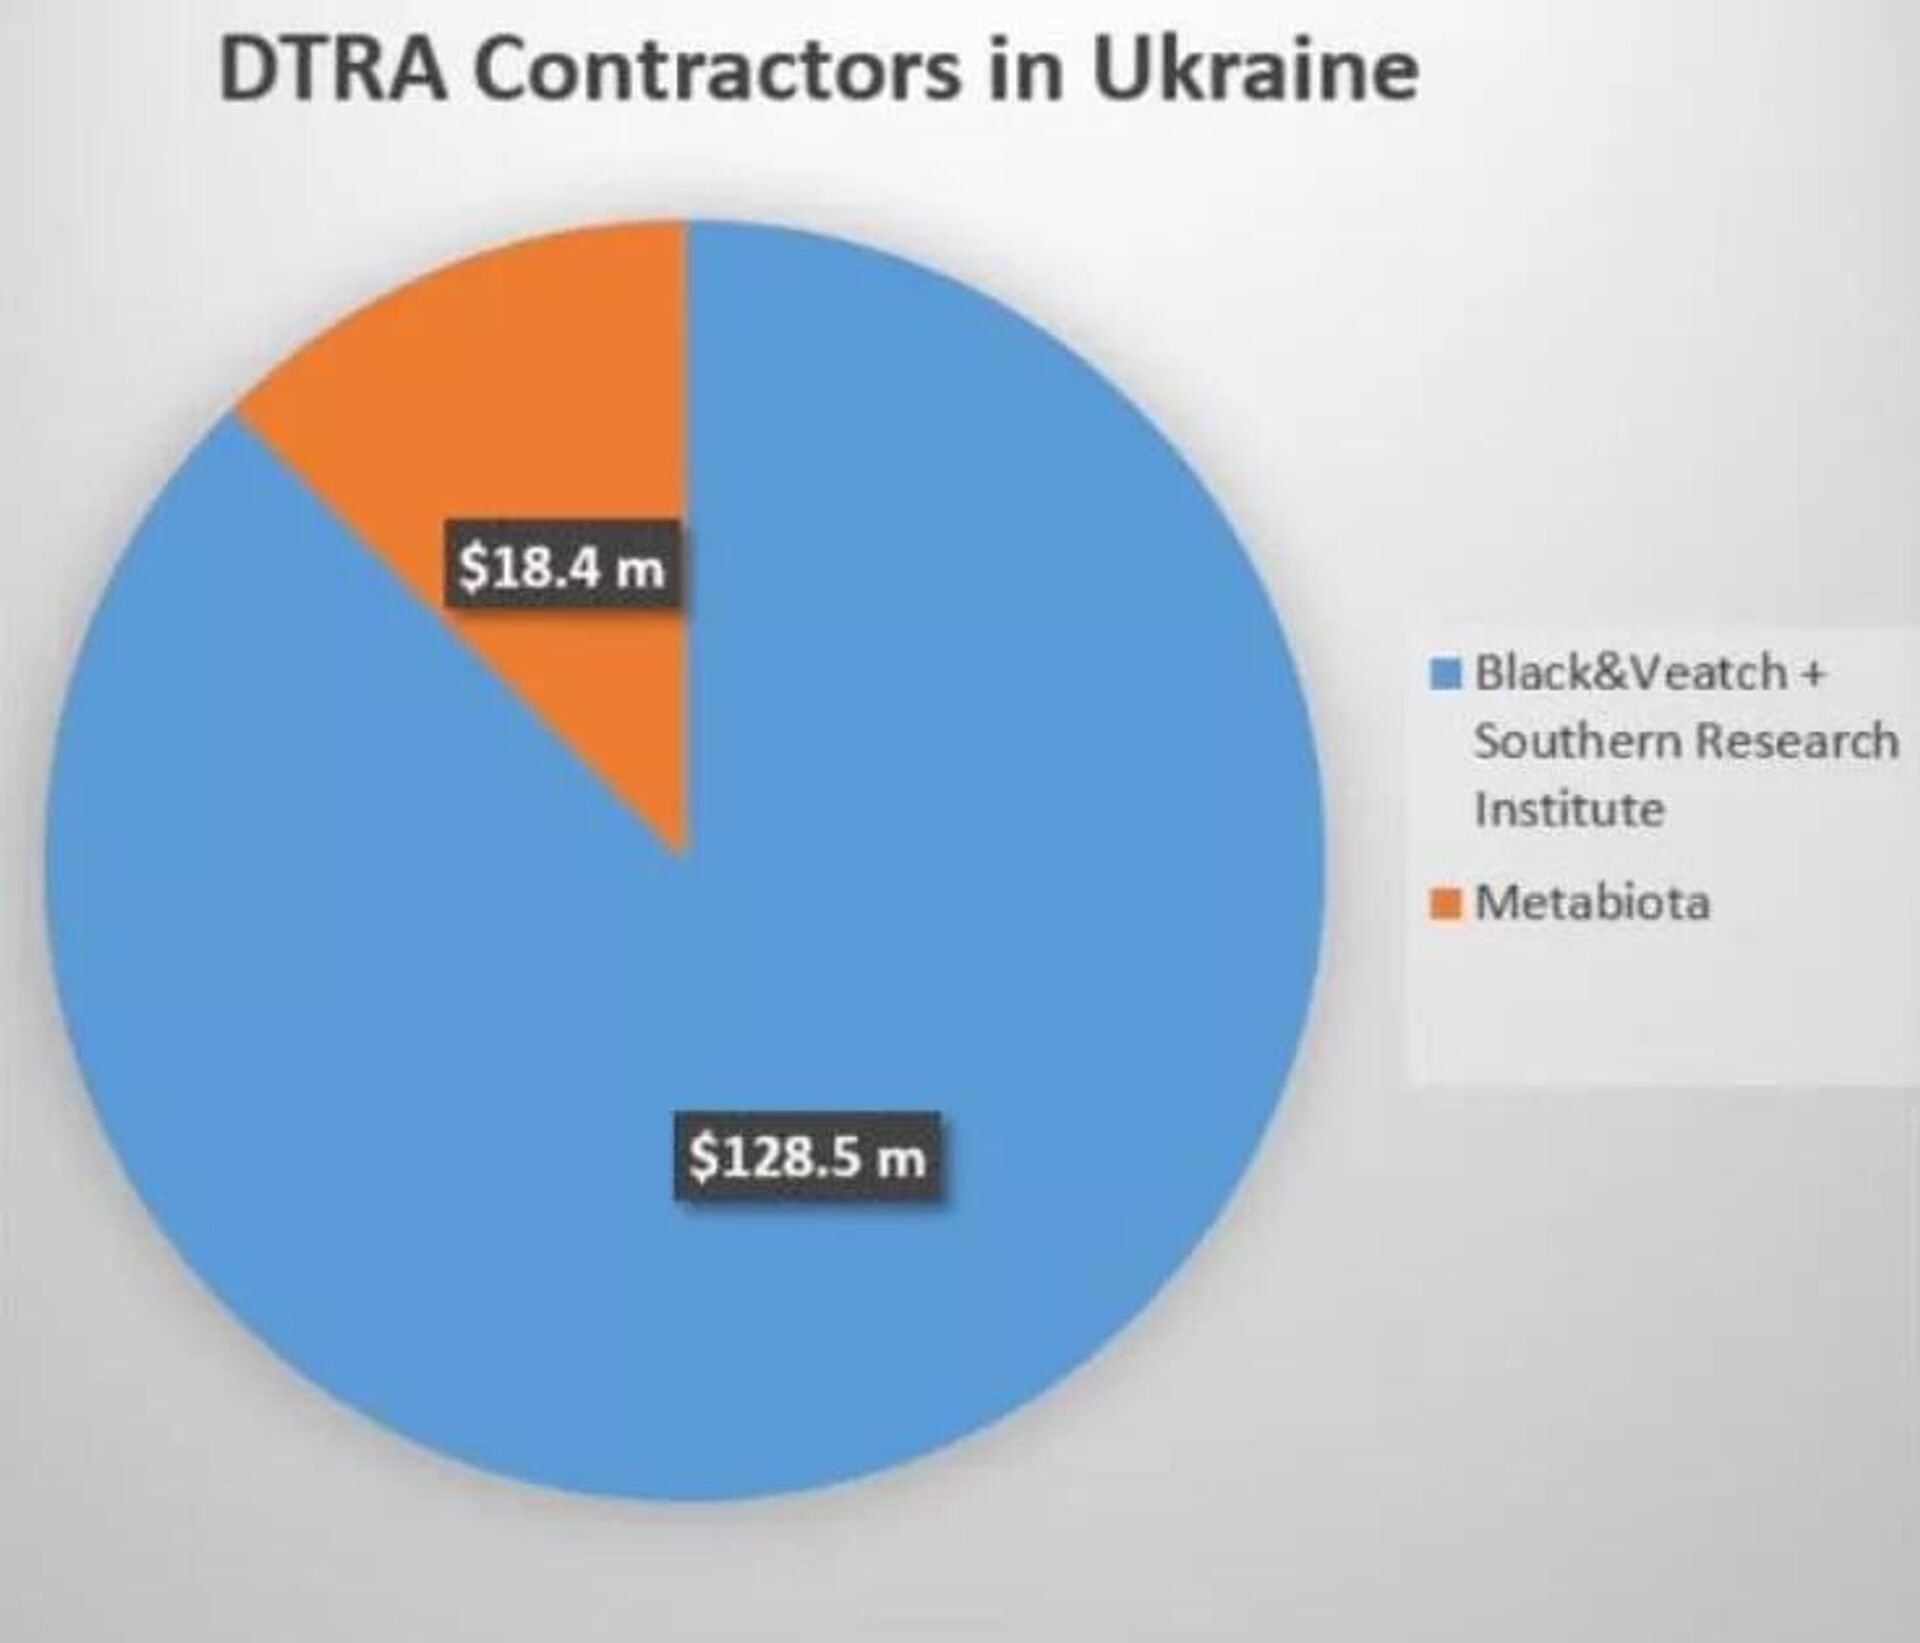 Valores destinados às empresas contratadas pela Agência de Defesa para a Redução de Ameaças (DTRA, na sigla em inglês) na Ucrânia - Sputnik Brasil, 1920, 26.03.2022